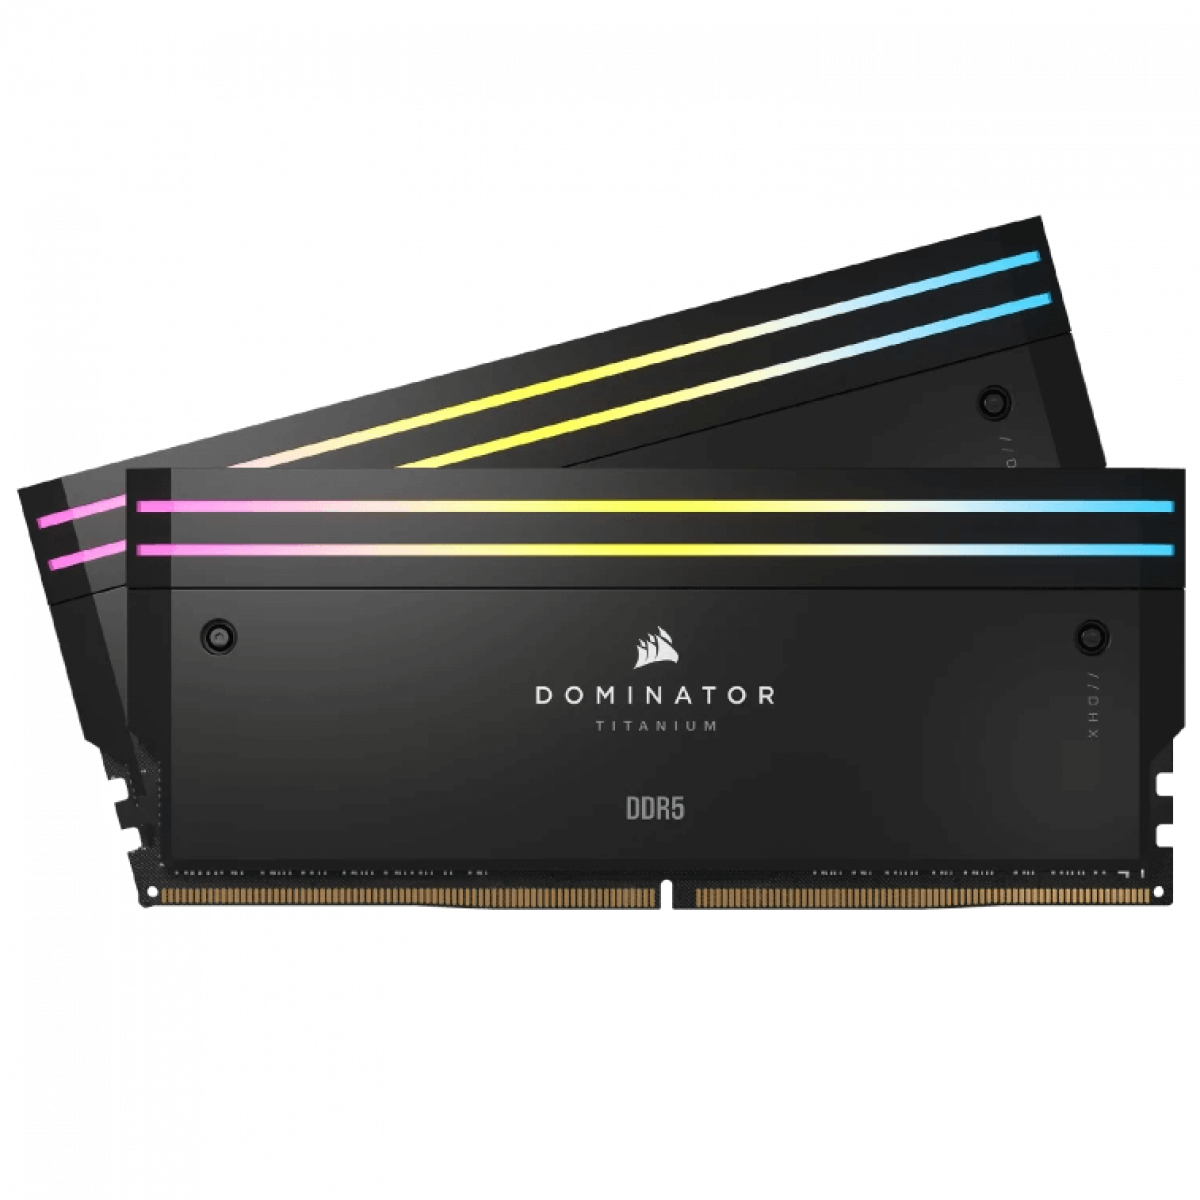 CORSAIR DOMINATOR TITANIUM Black DDR5, 6400MT/s 32GB 2x16GB DIMM, XMP 3.0, RGB LED, 1.4V